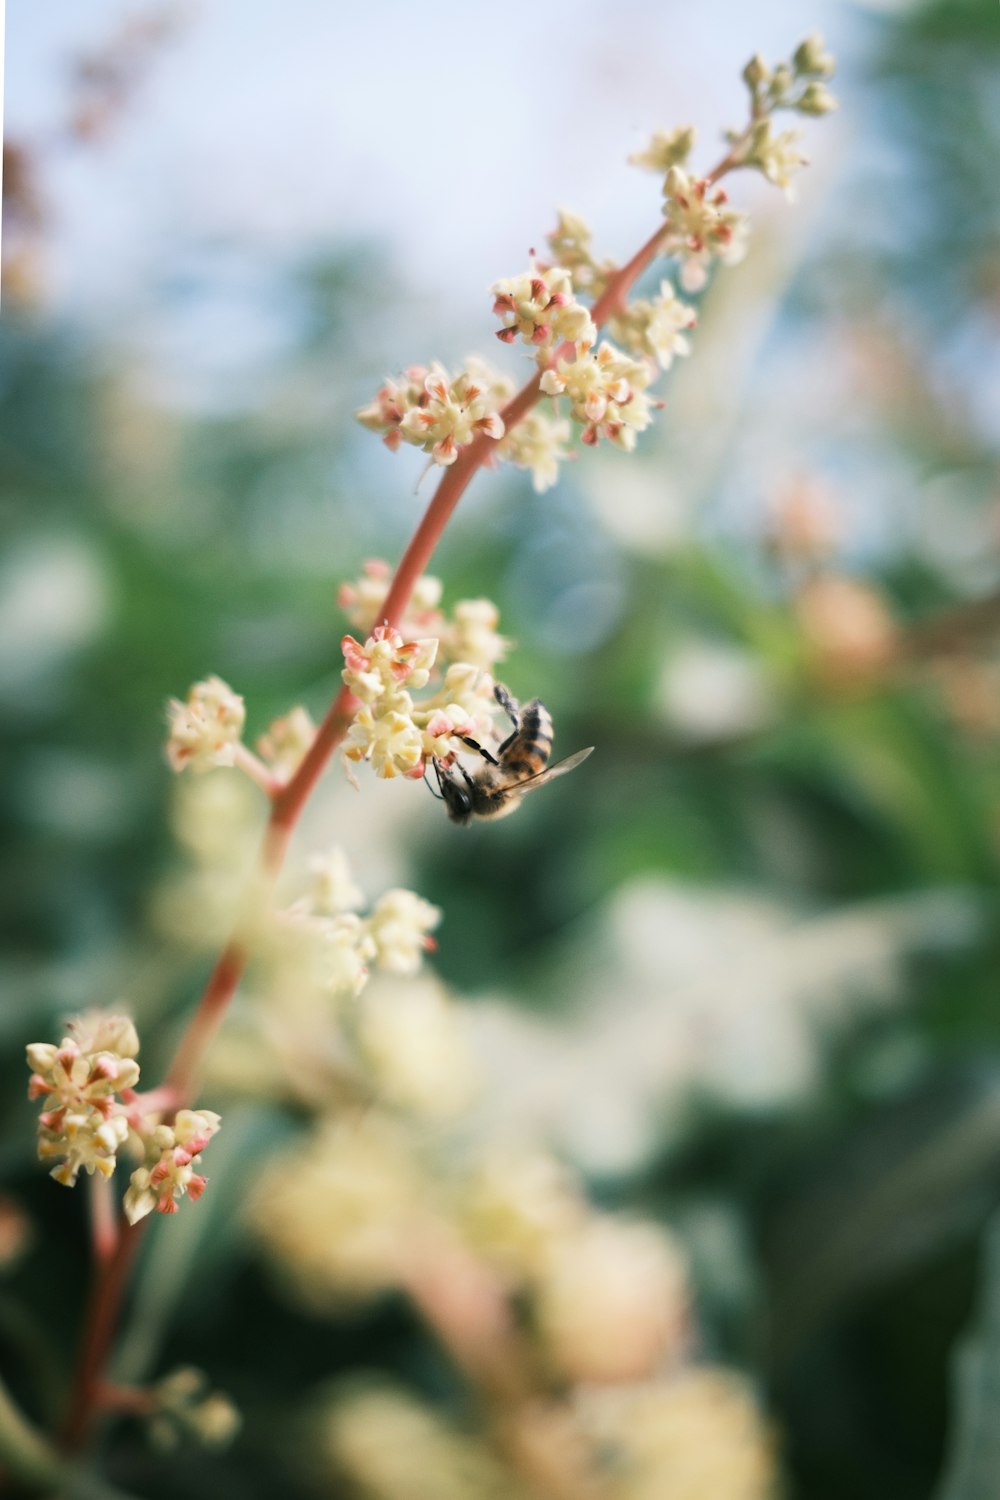 abeille perchée sur la fleur blanche et rouge en gros plan photographie pendant la journée